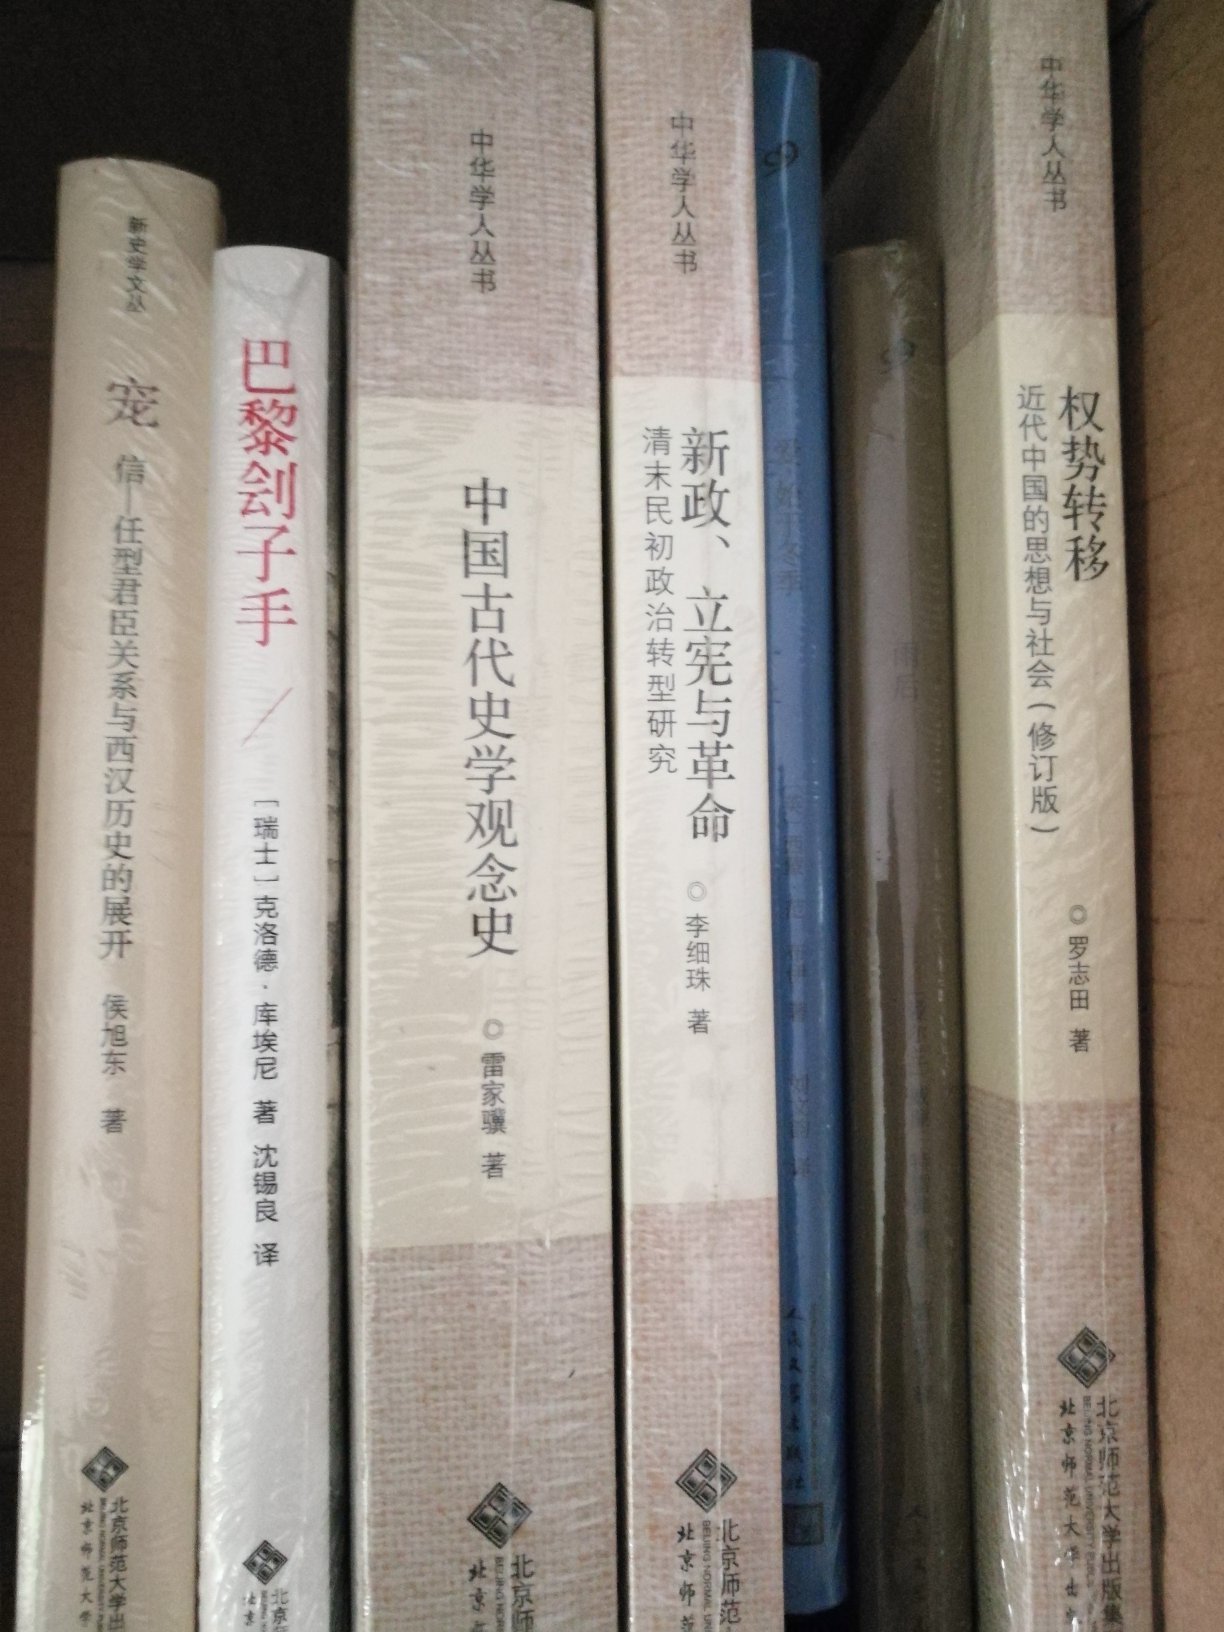 本书对中国古代史学观念的产生发展做了详细论述，对史学观念的演变进行了深入分析